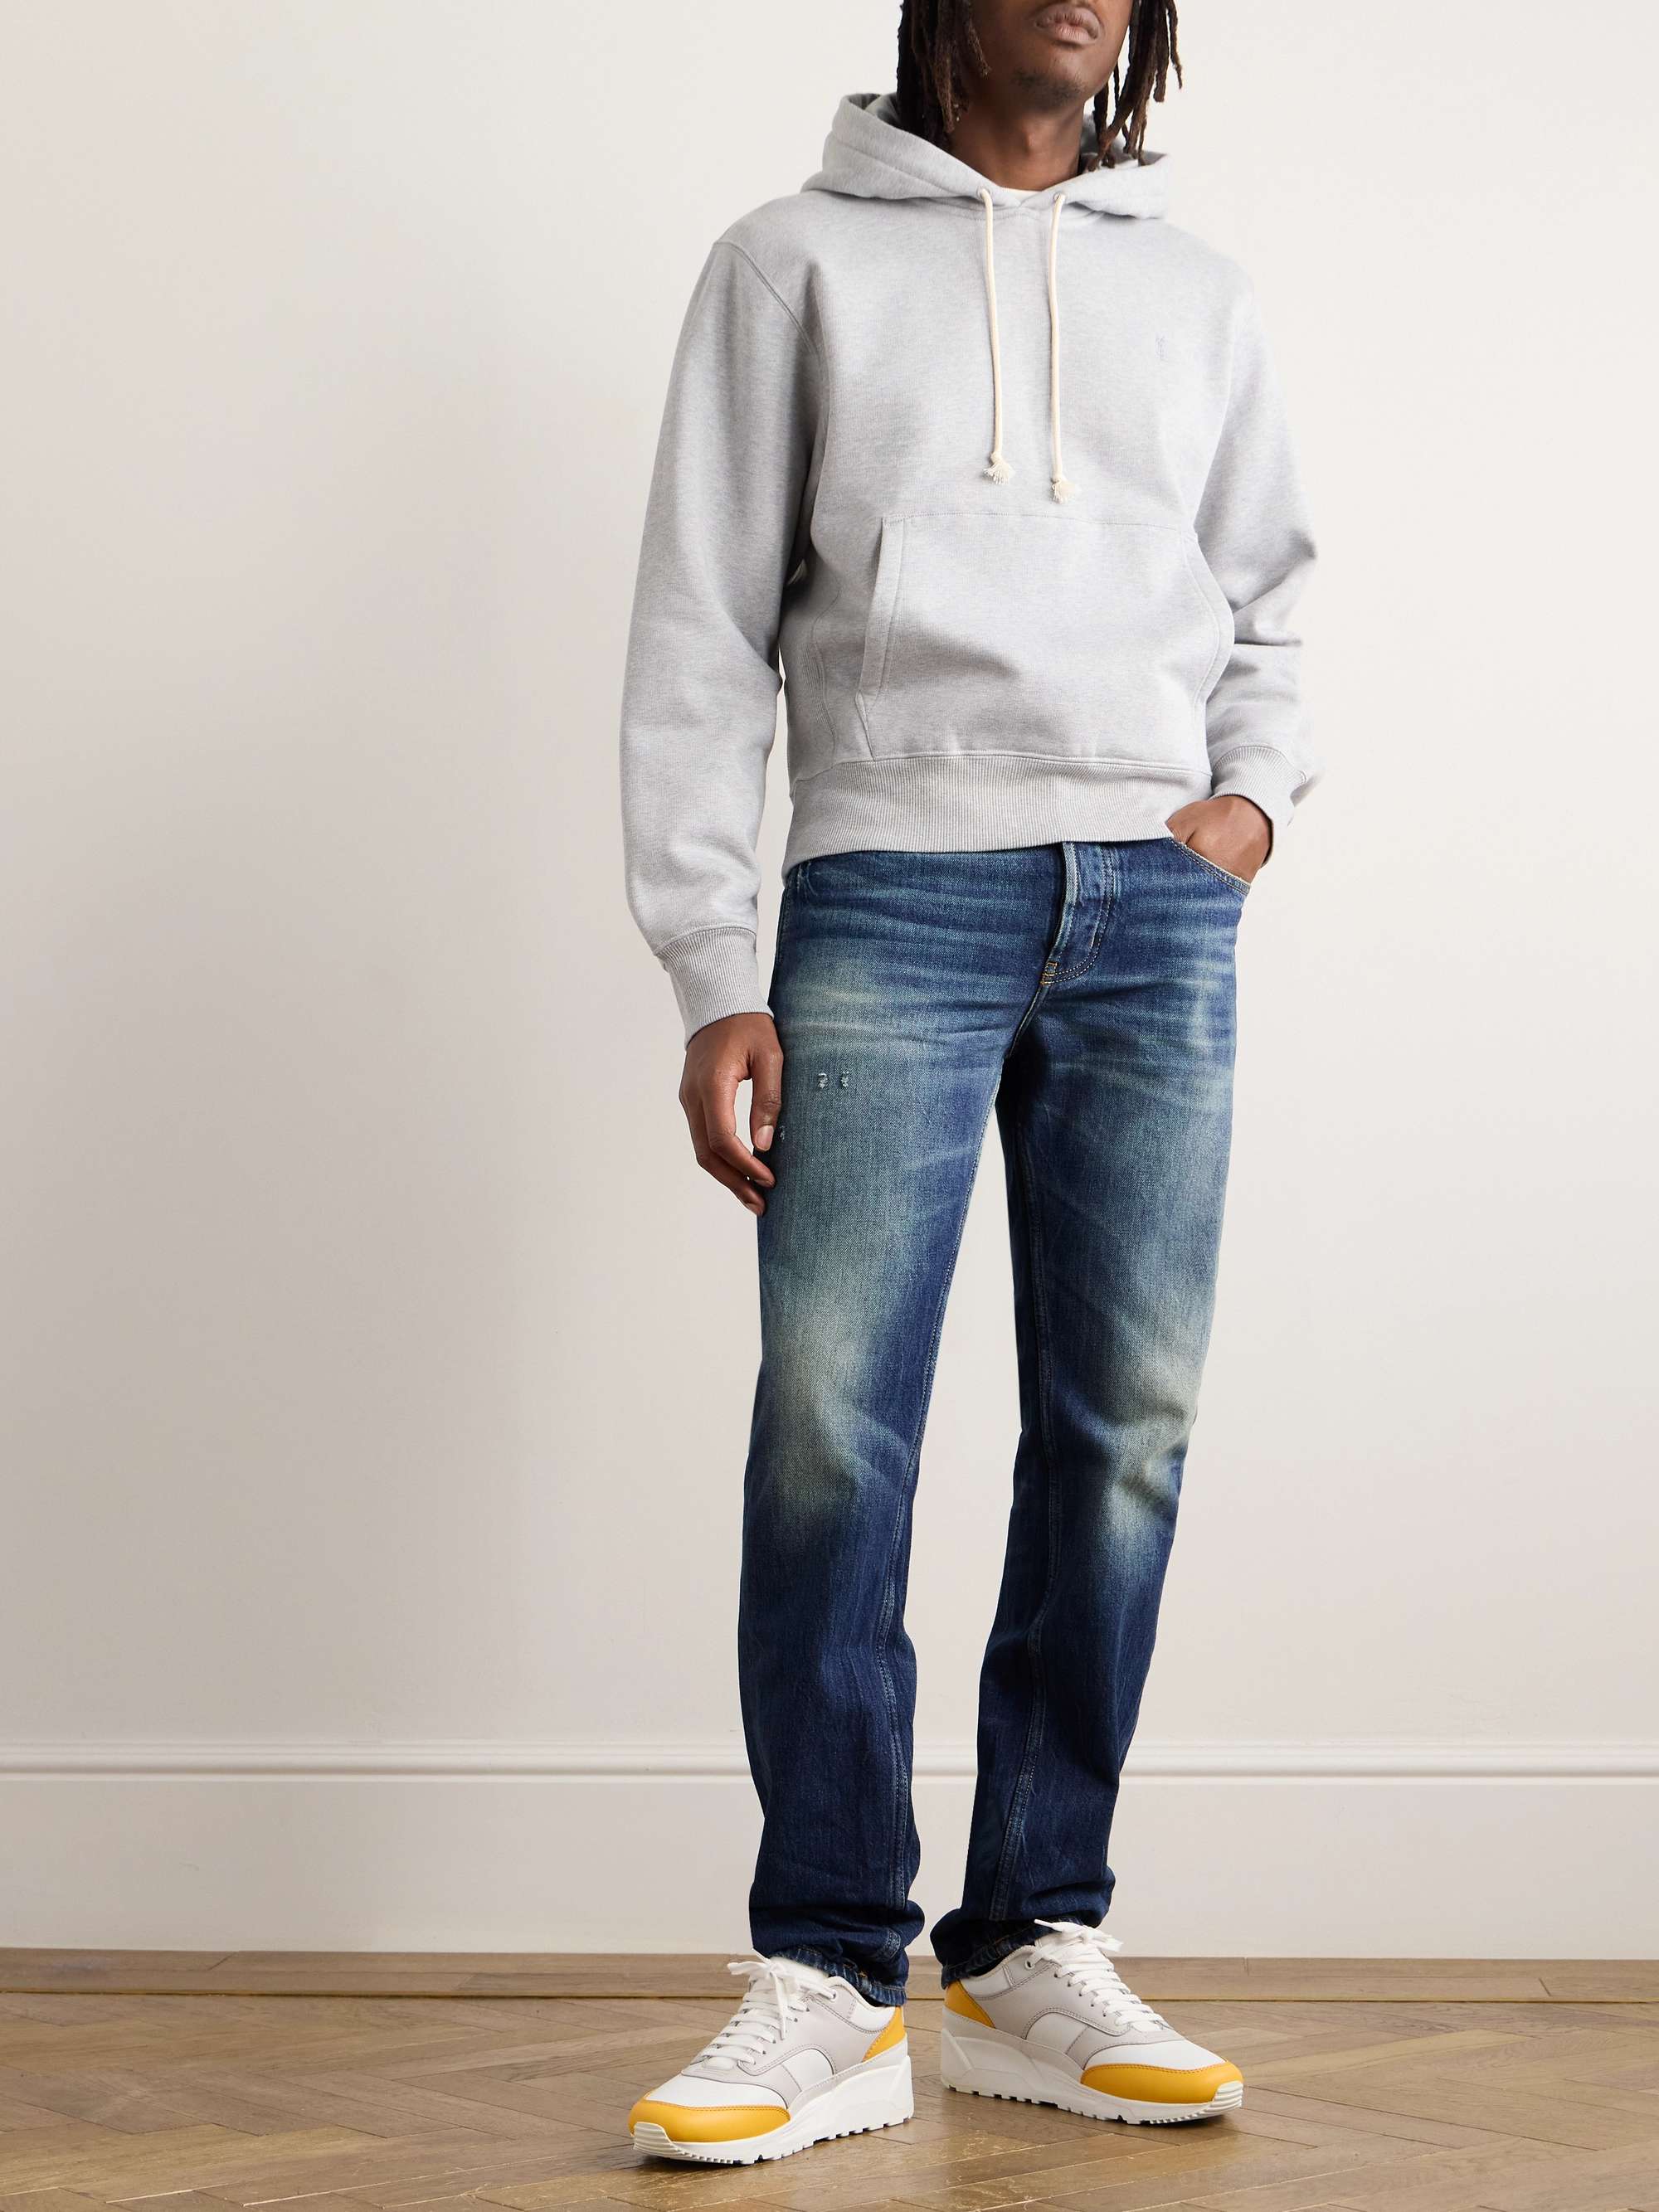 SAINT LAURENT Straight-Leg Distressed Jeans for Men | MR PORTER